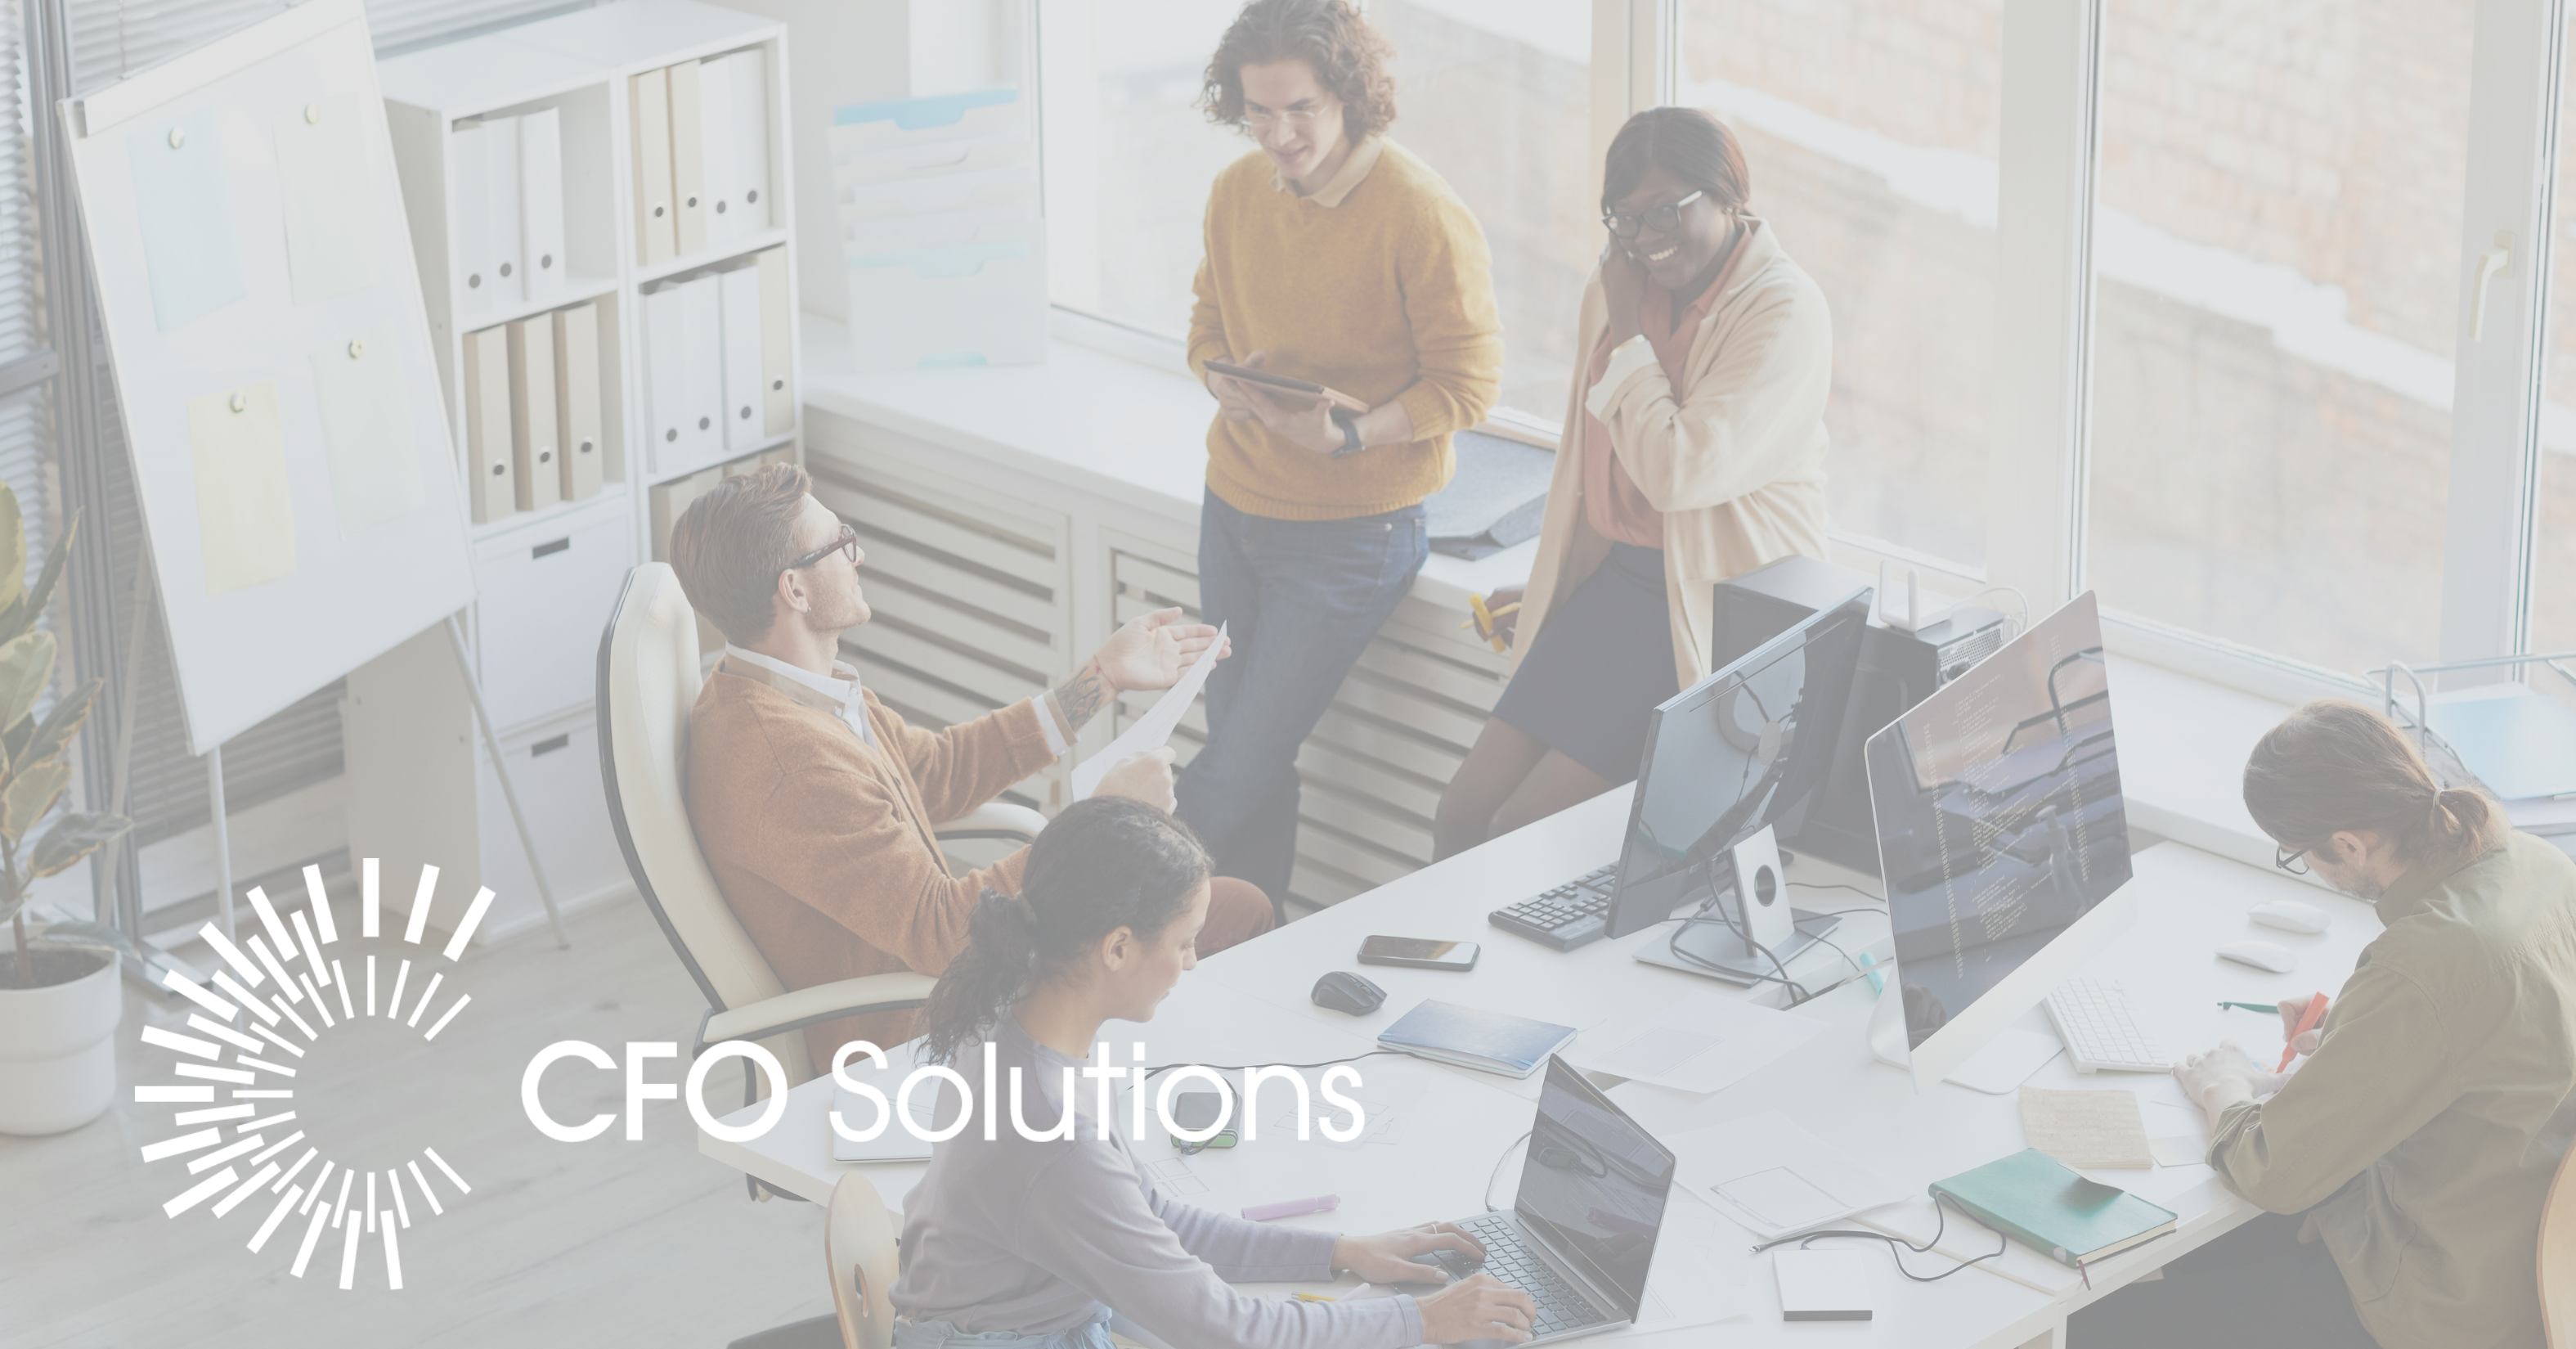 CFO Solutions Client vs. Implementation Partner perspective